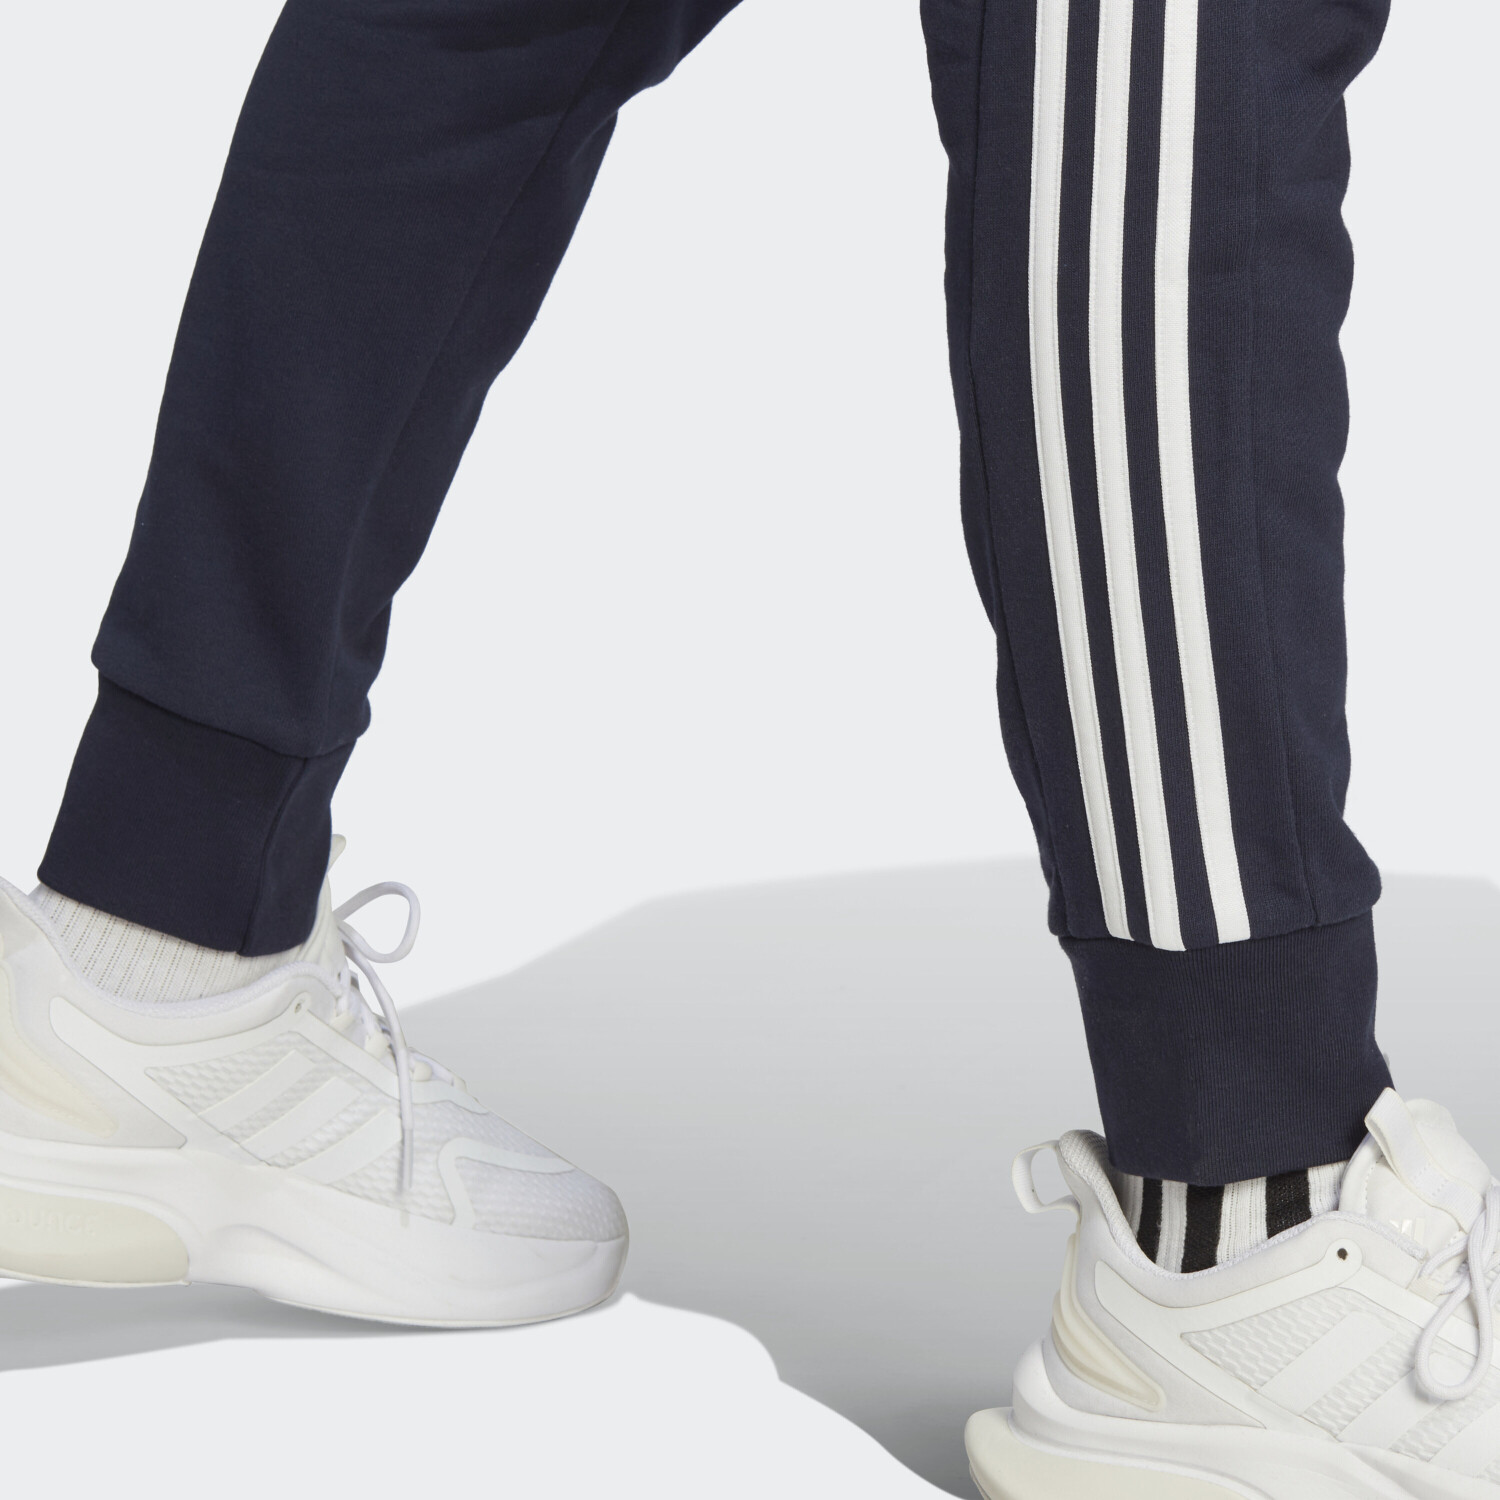 Adidas Essentials French Terry Tapered Cuff ink/white Preisvergleich Hose 3-Streifen ab 31,98 € | legend bei